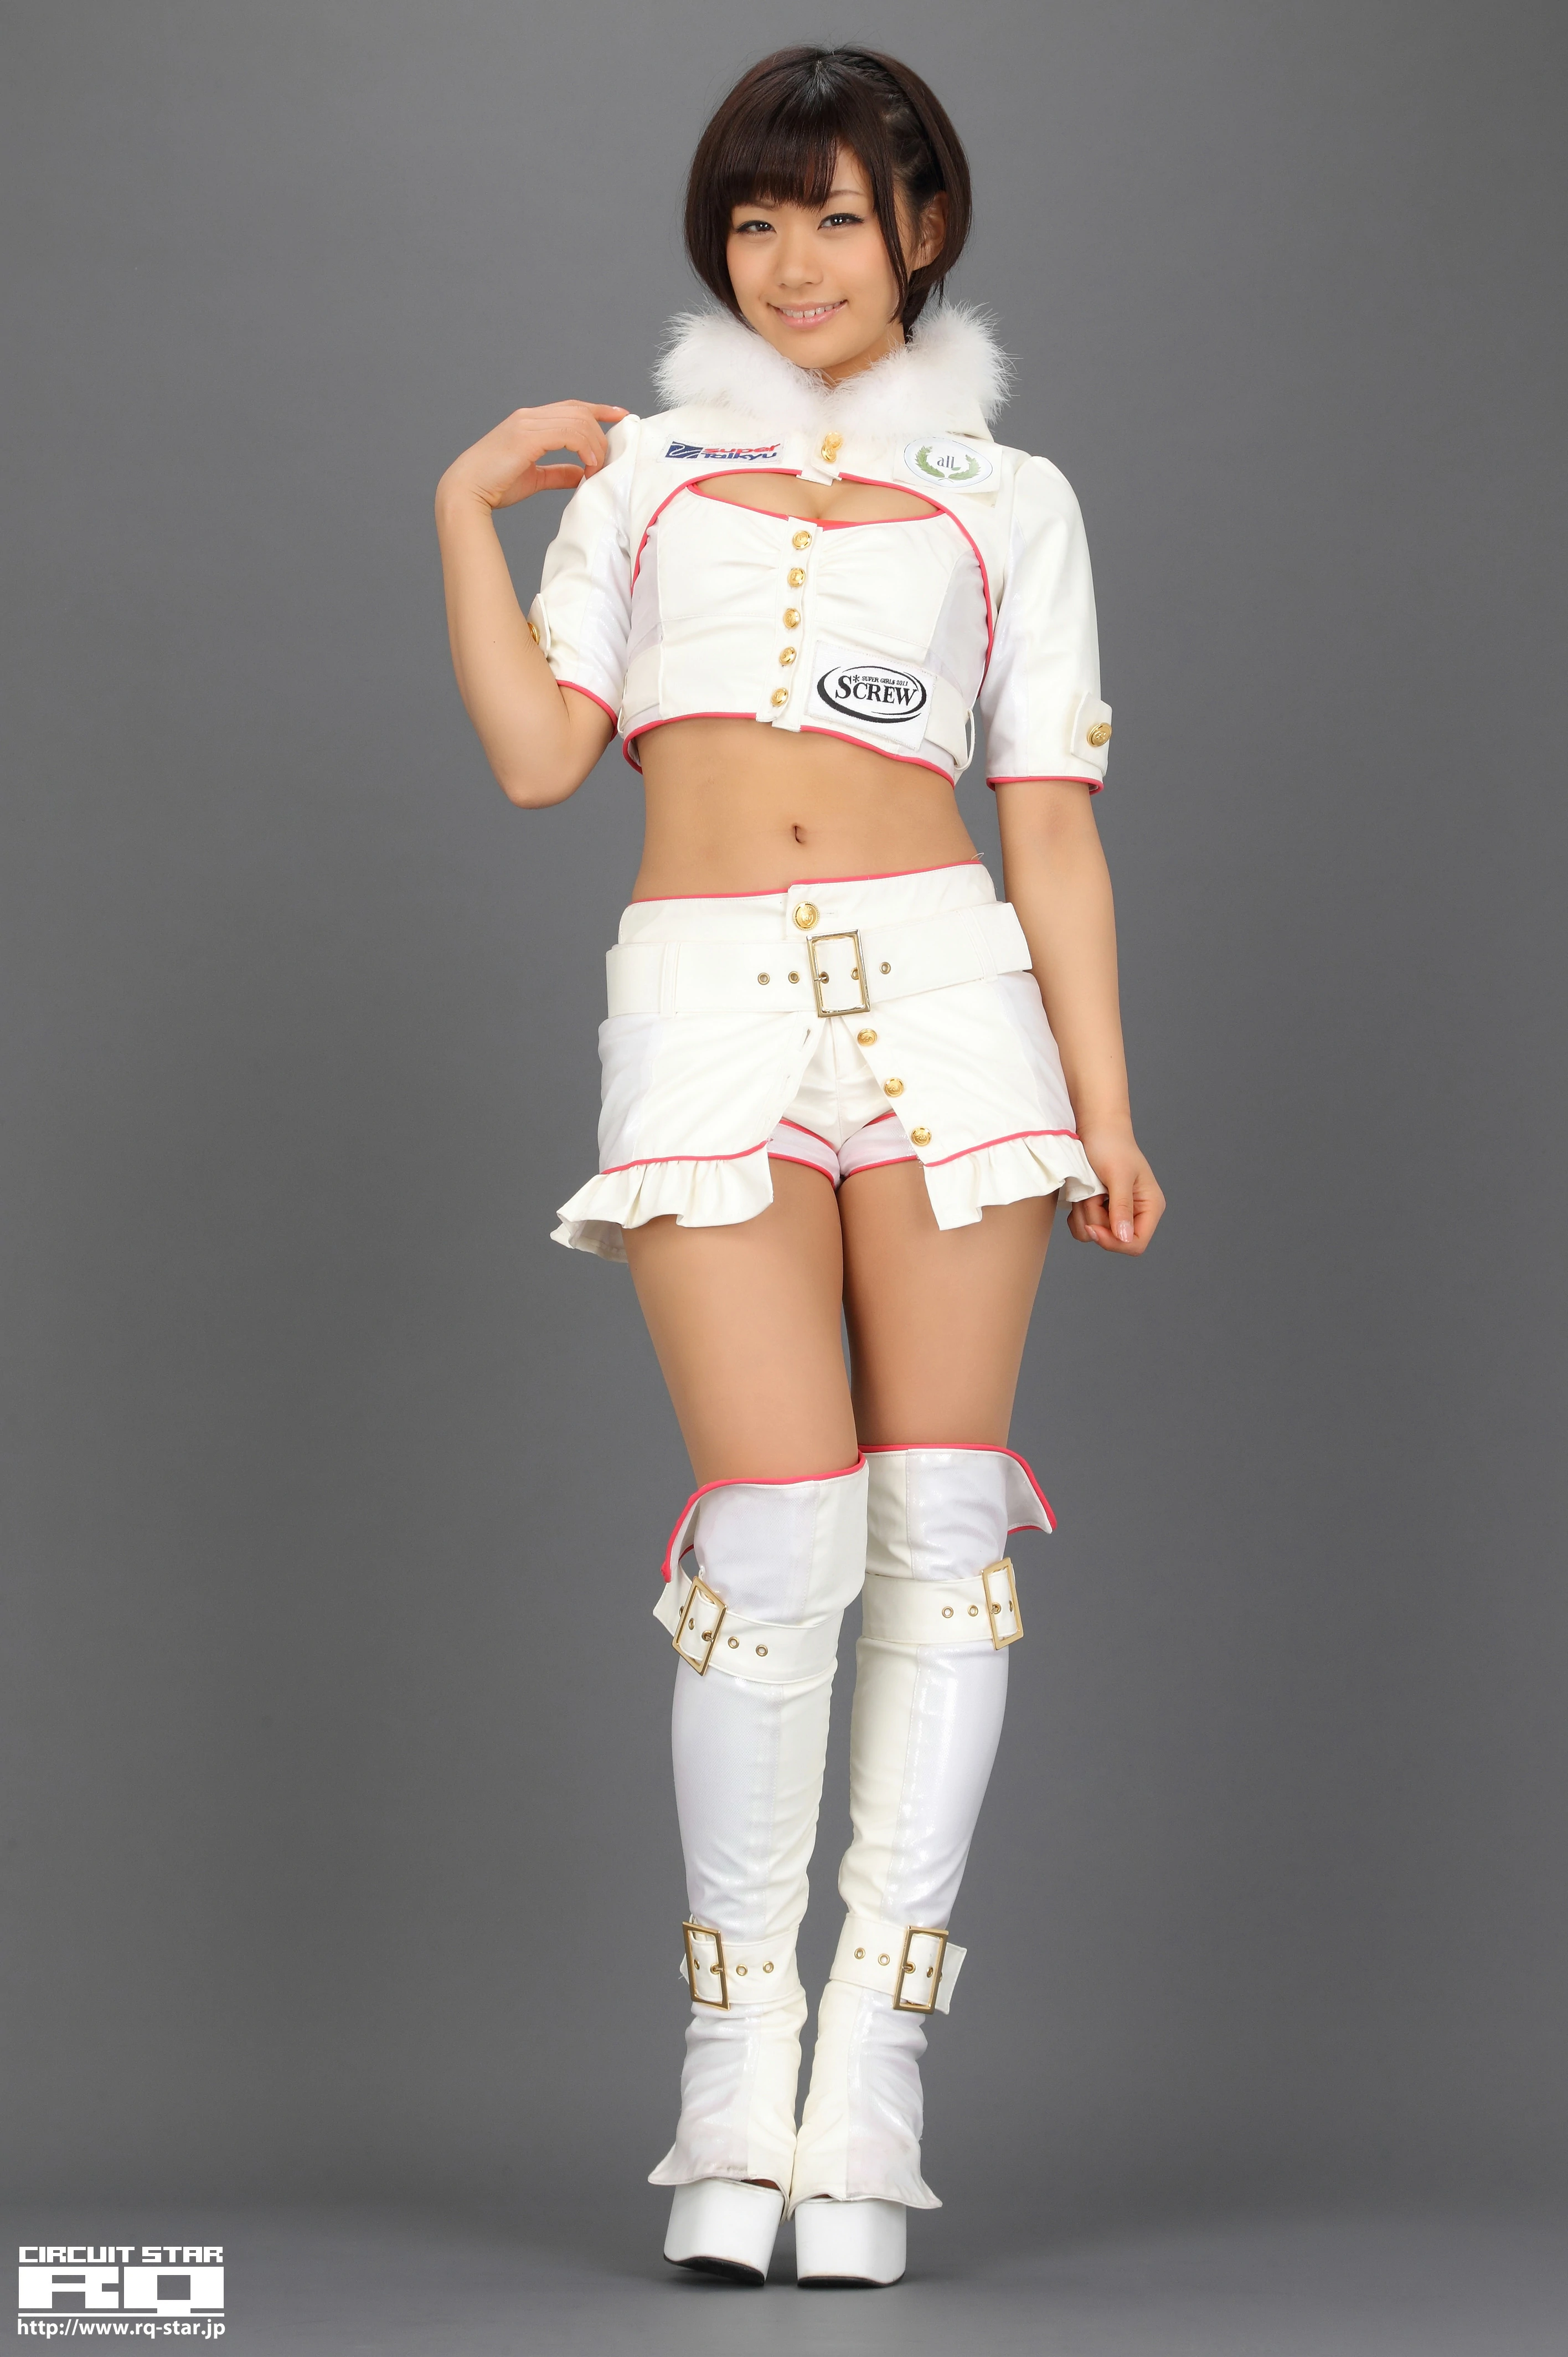 [RQ-STAR写真]NO.00616 安枝瞳（やすえだ ひとみ，Hitomi Yasueda）白色赛车女郎制服性感私房写真集,